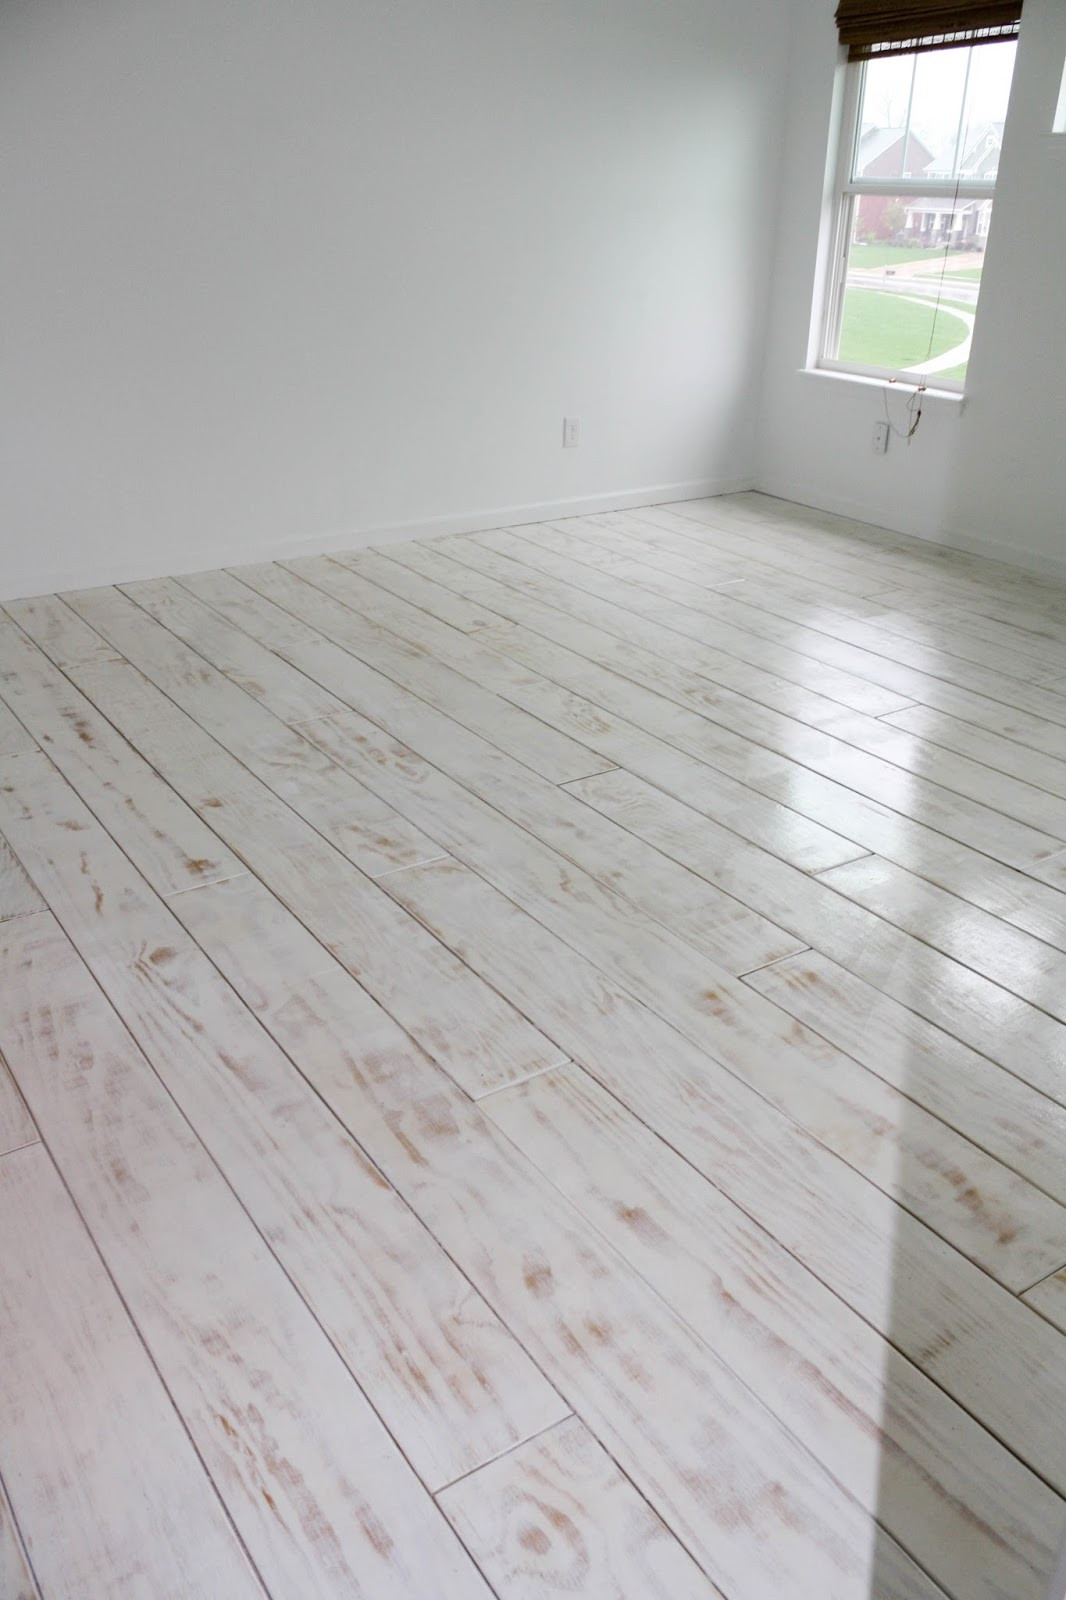 DIY Plywood Floors
 DIY PLANKED FLOORS